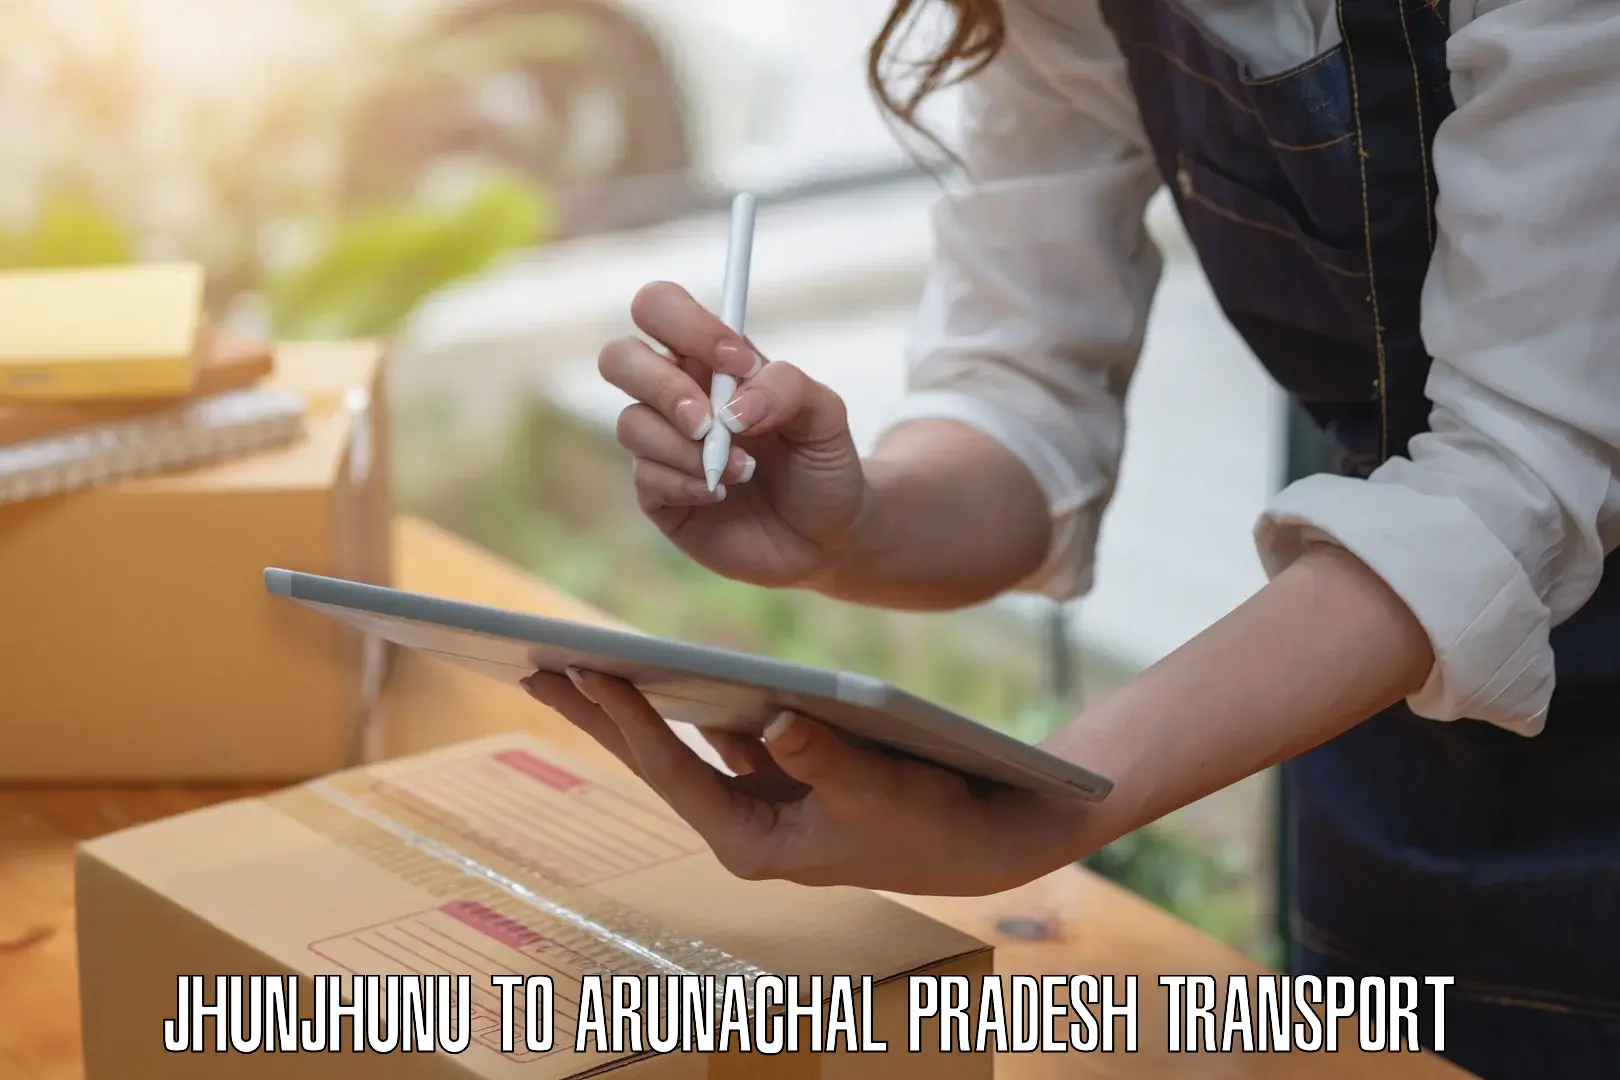 Domestic transport services Jhunjhunu to Arunachal Pradesh